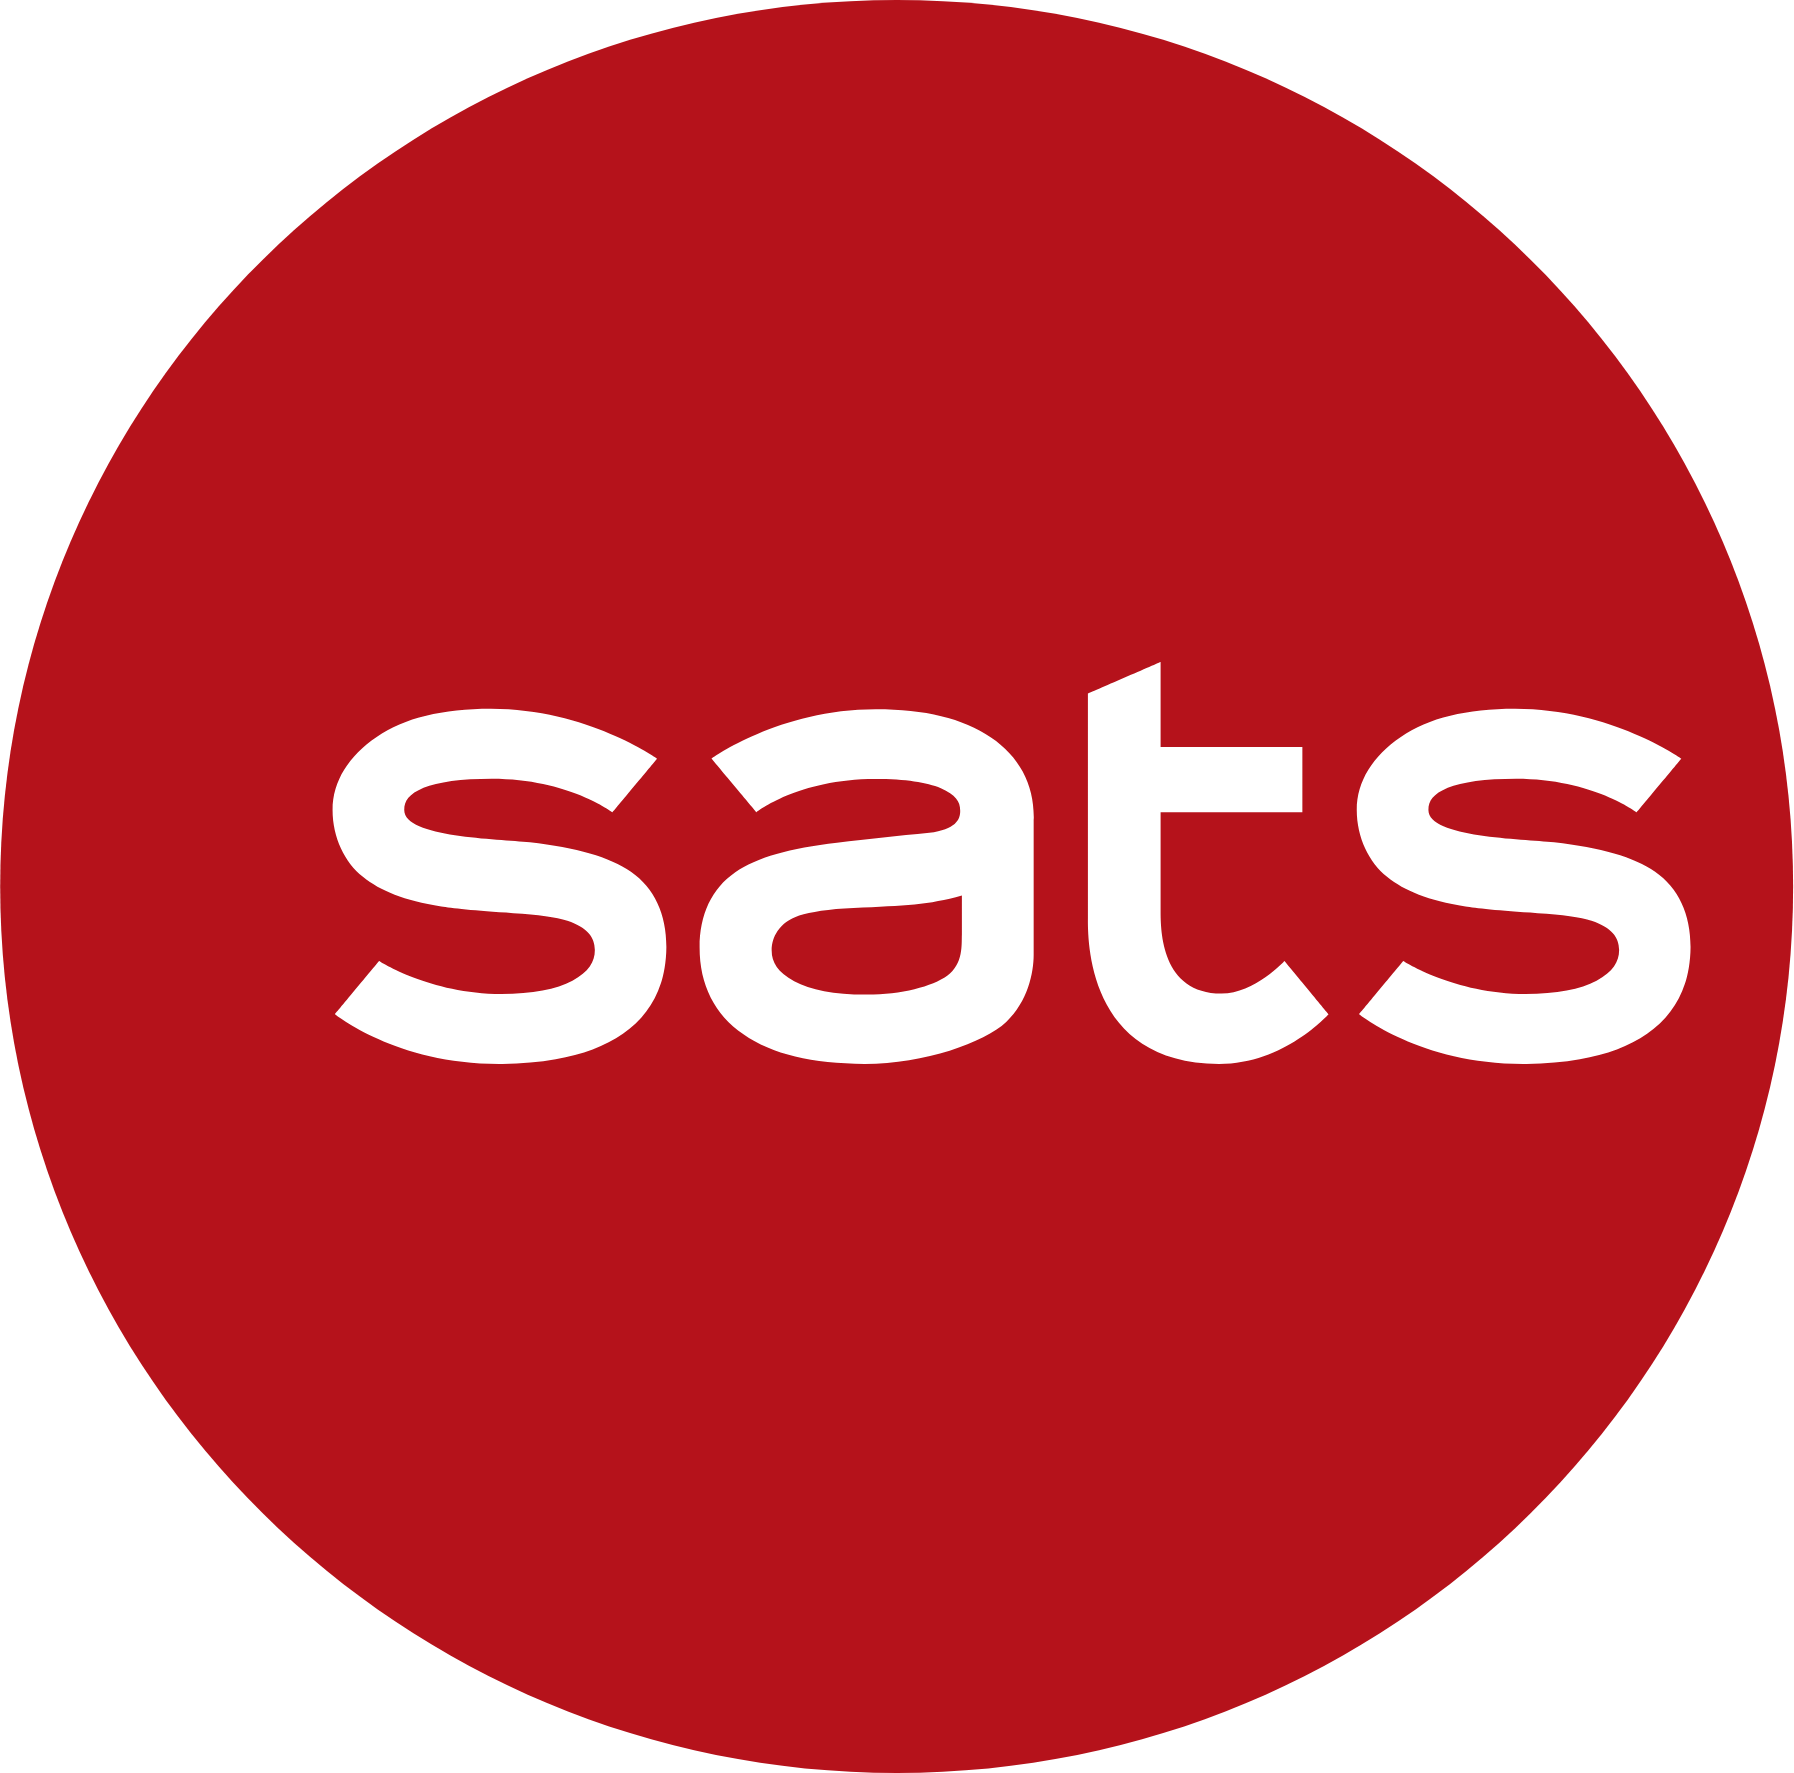 SATS logo (transparent PNG)